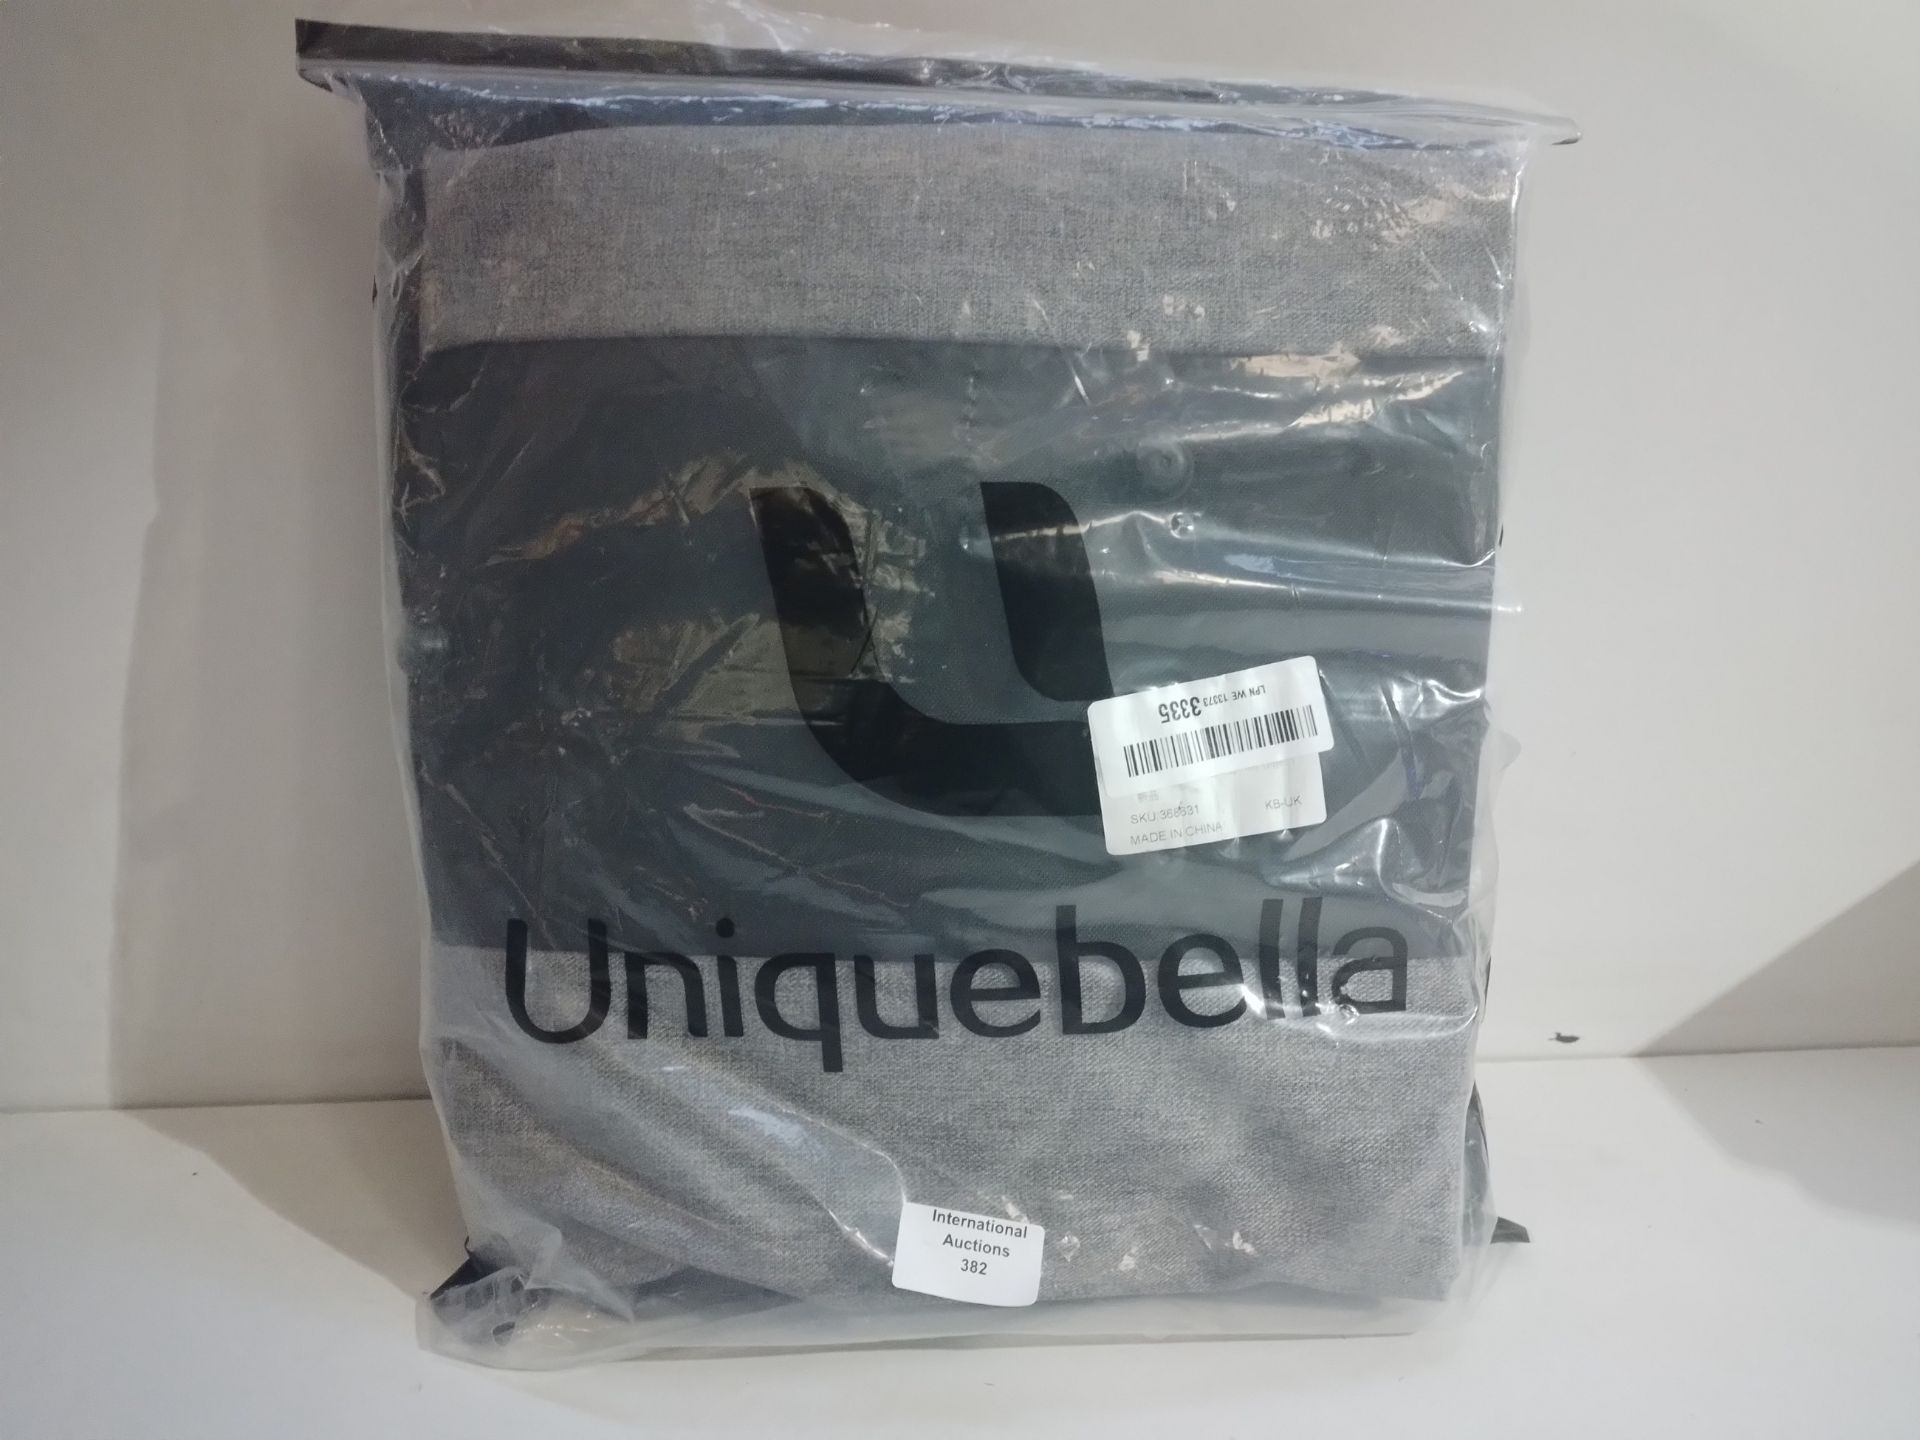 RRP £56.99 UNIQUEBELLA Travel Suit Carrier Garment Duffel Bag - Image 2 of 2